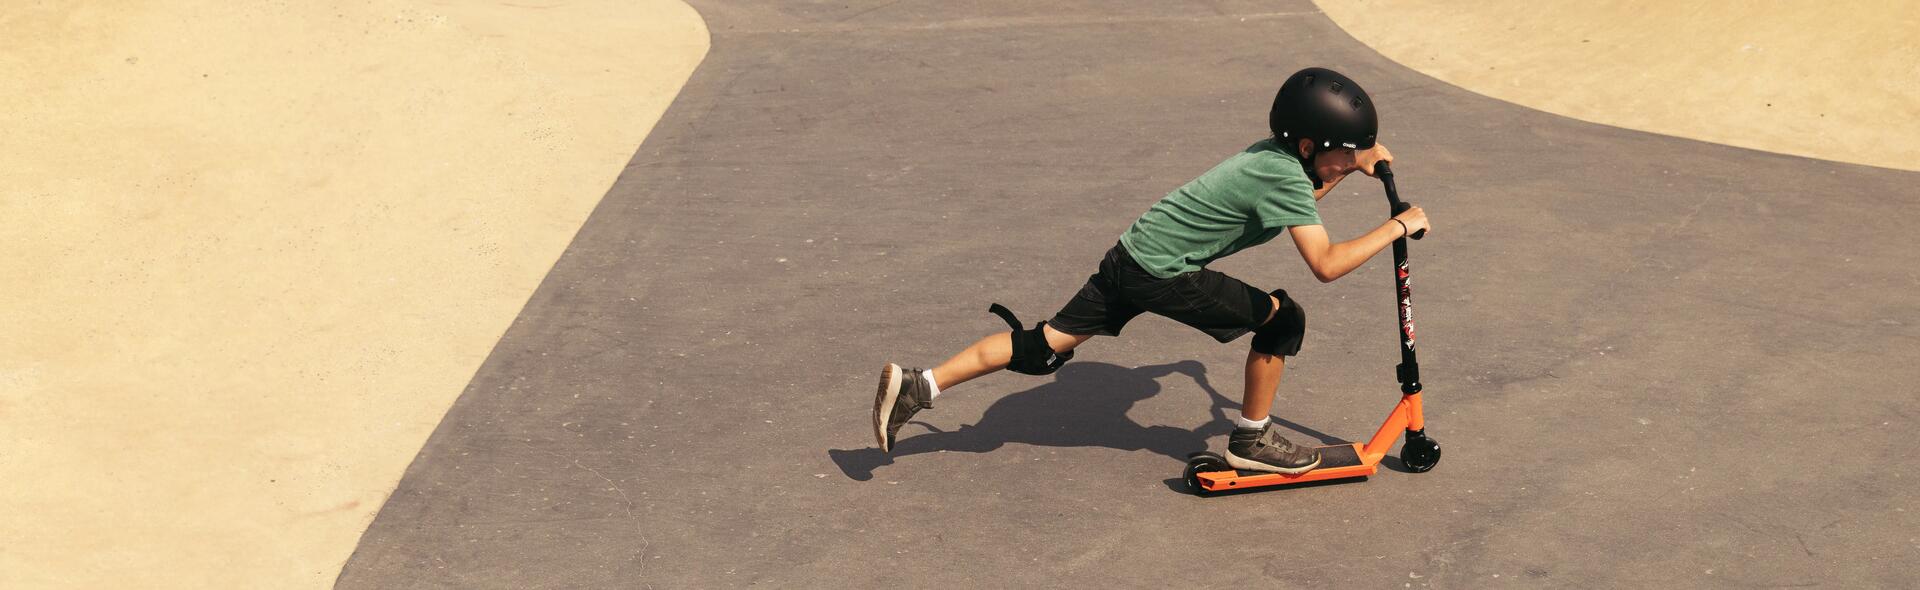 Chłopiec jeżdżący na hulajnodze wyczynowej z czarnymi kołami na skateparku